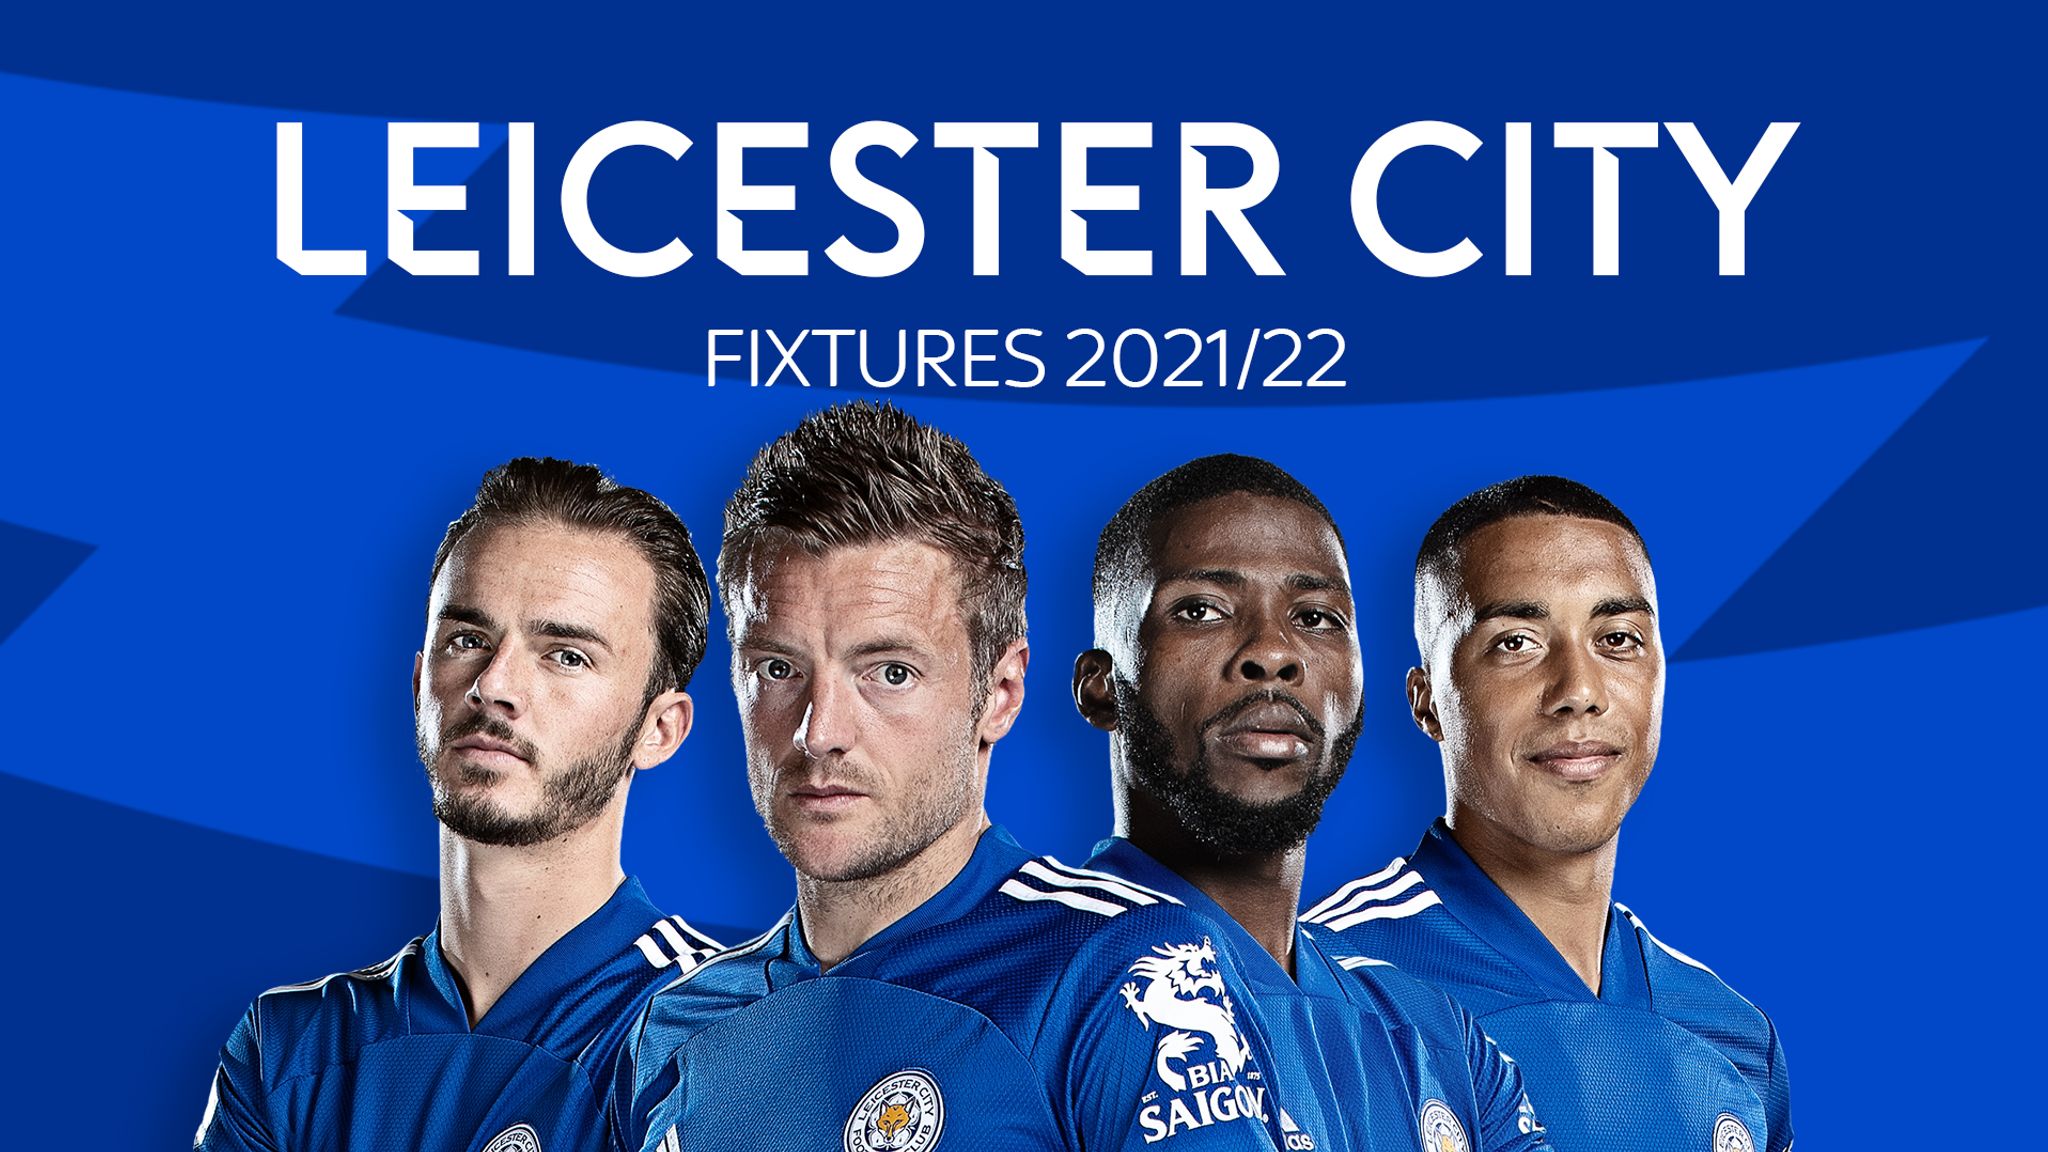 Melhores momentos: City EDS 3x1 Leicester City Sub-21